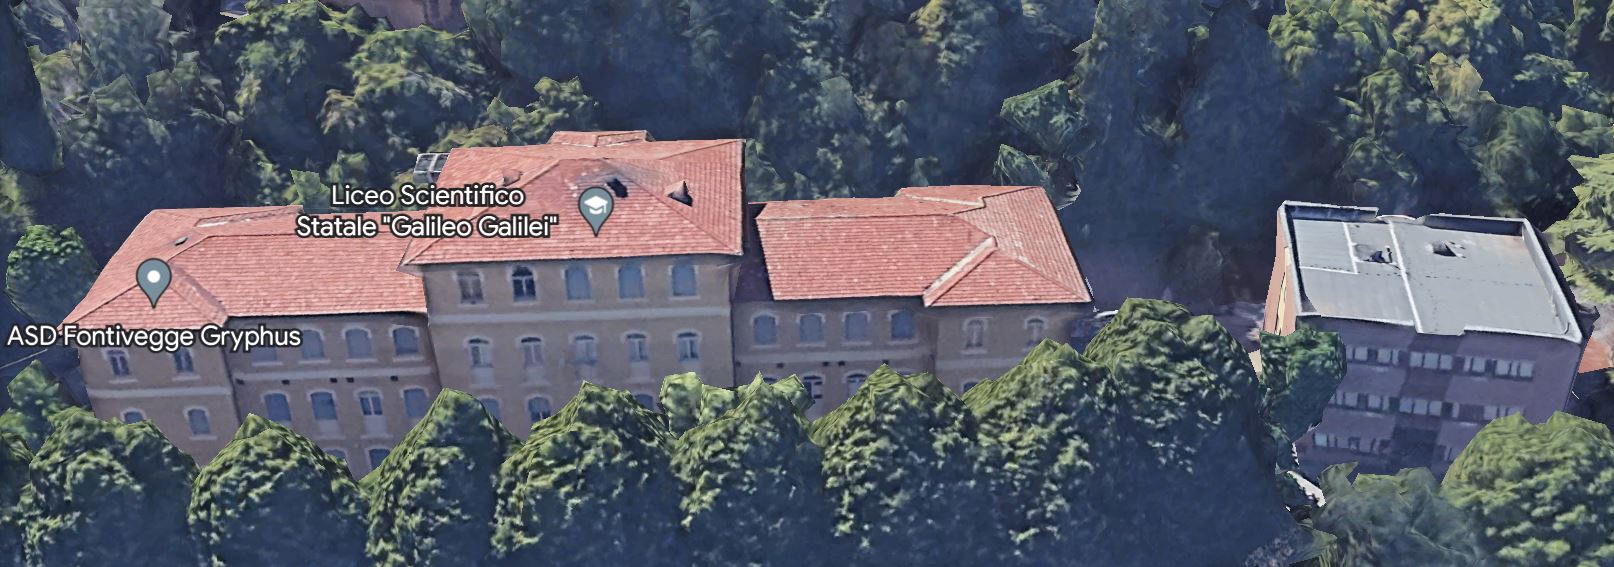 Liceo Scientifico “Galileo Galilei”, ex Padiglione Valiano, con a destra nuova struttura, collegate fra loro da una pensilina